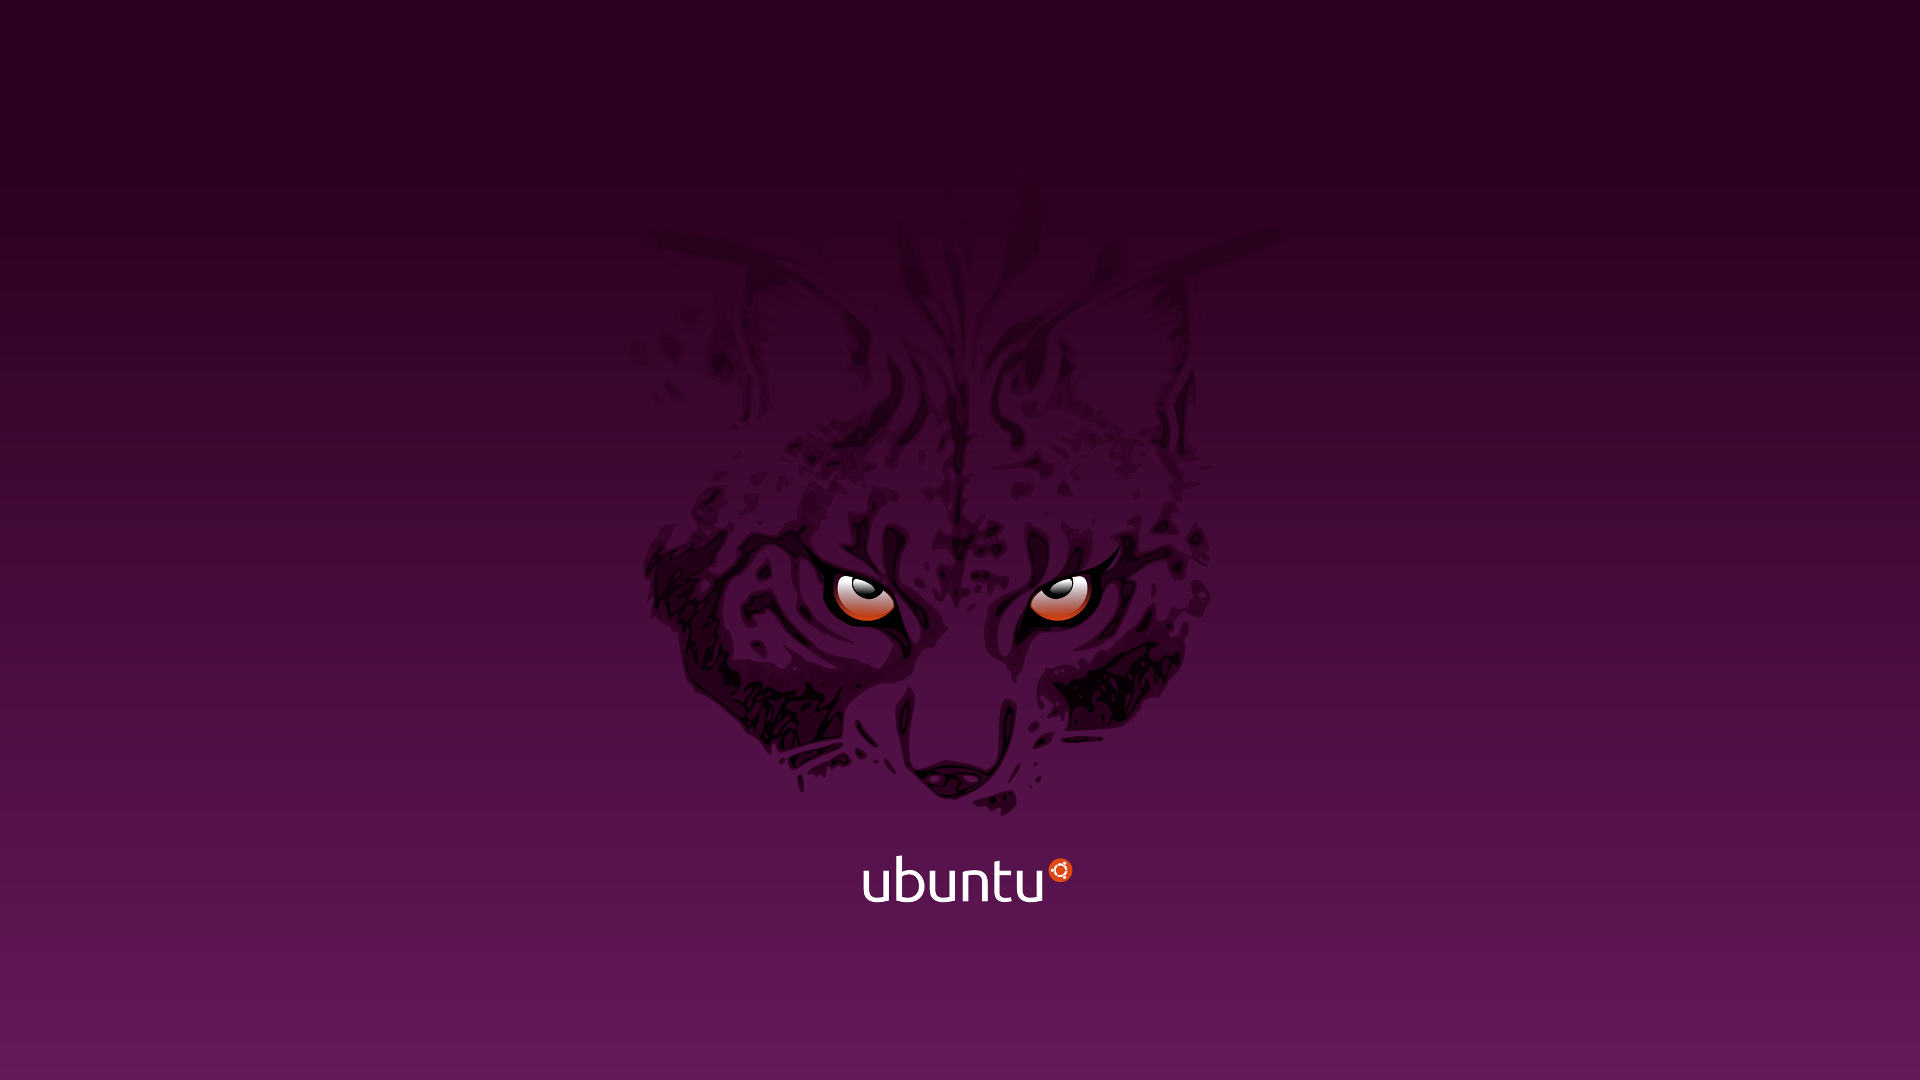 Sfondi Natale Ubuntu.26 Bellissimi Sfondi Dedicati Ad Ubuntu Chimerarevo